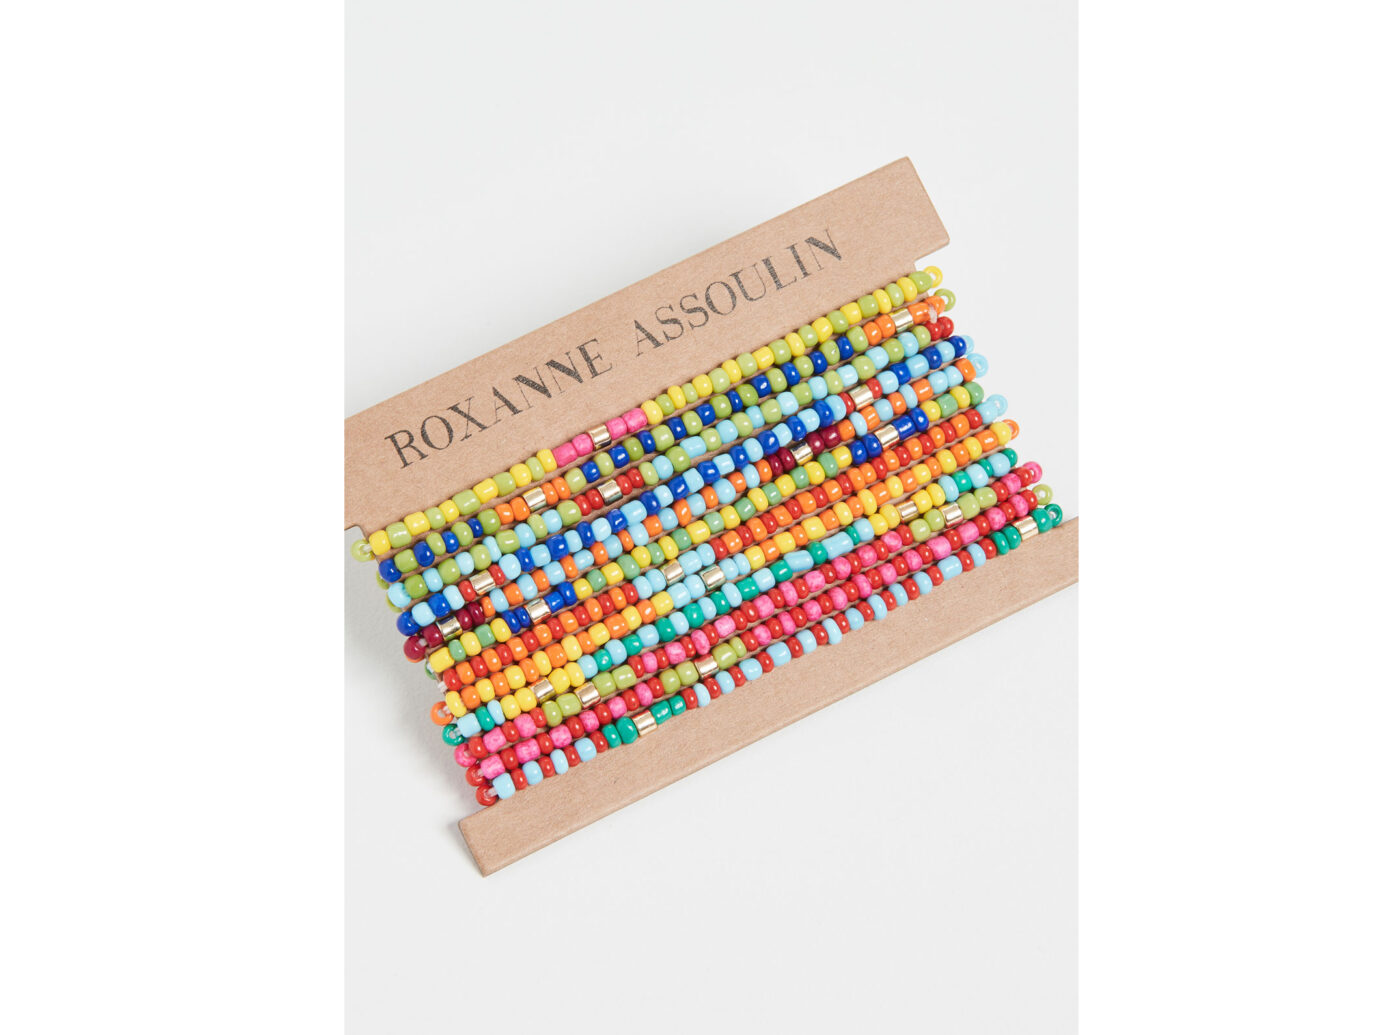 Roxanne Assoulin Patchwork - Set of Twelve Bracelets